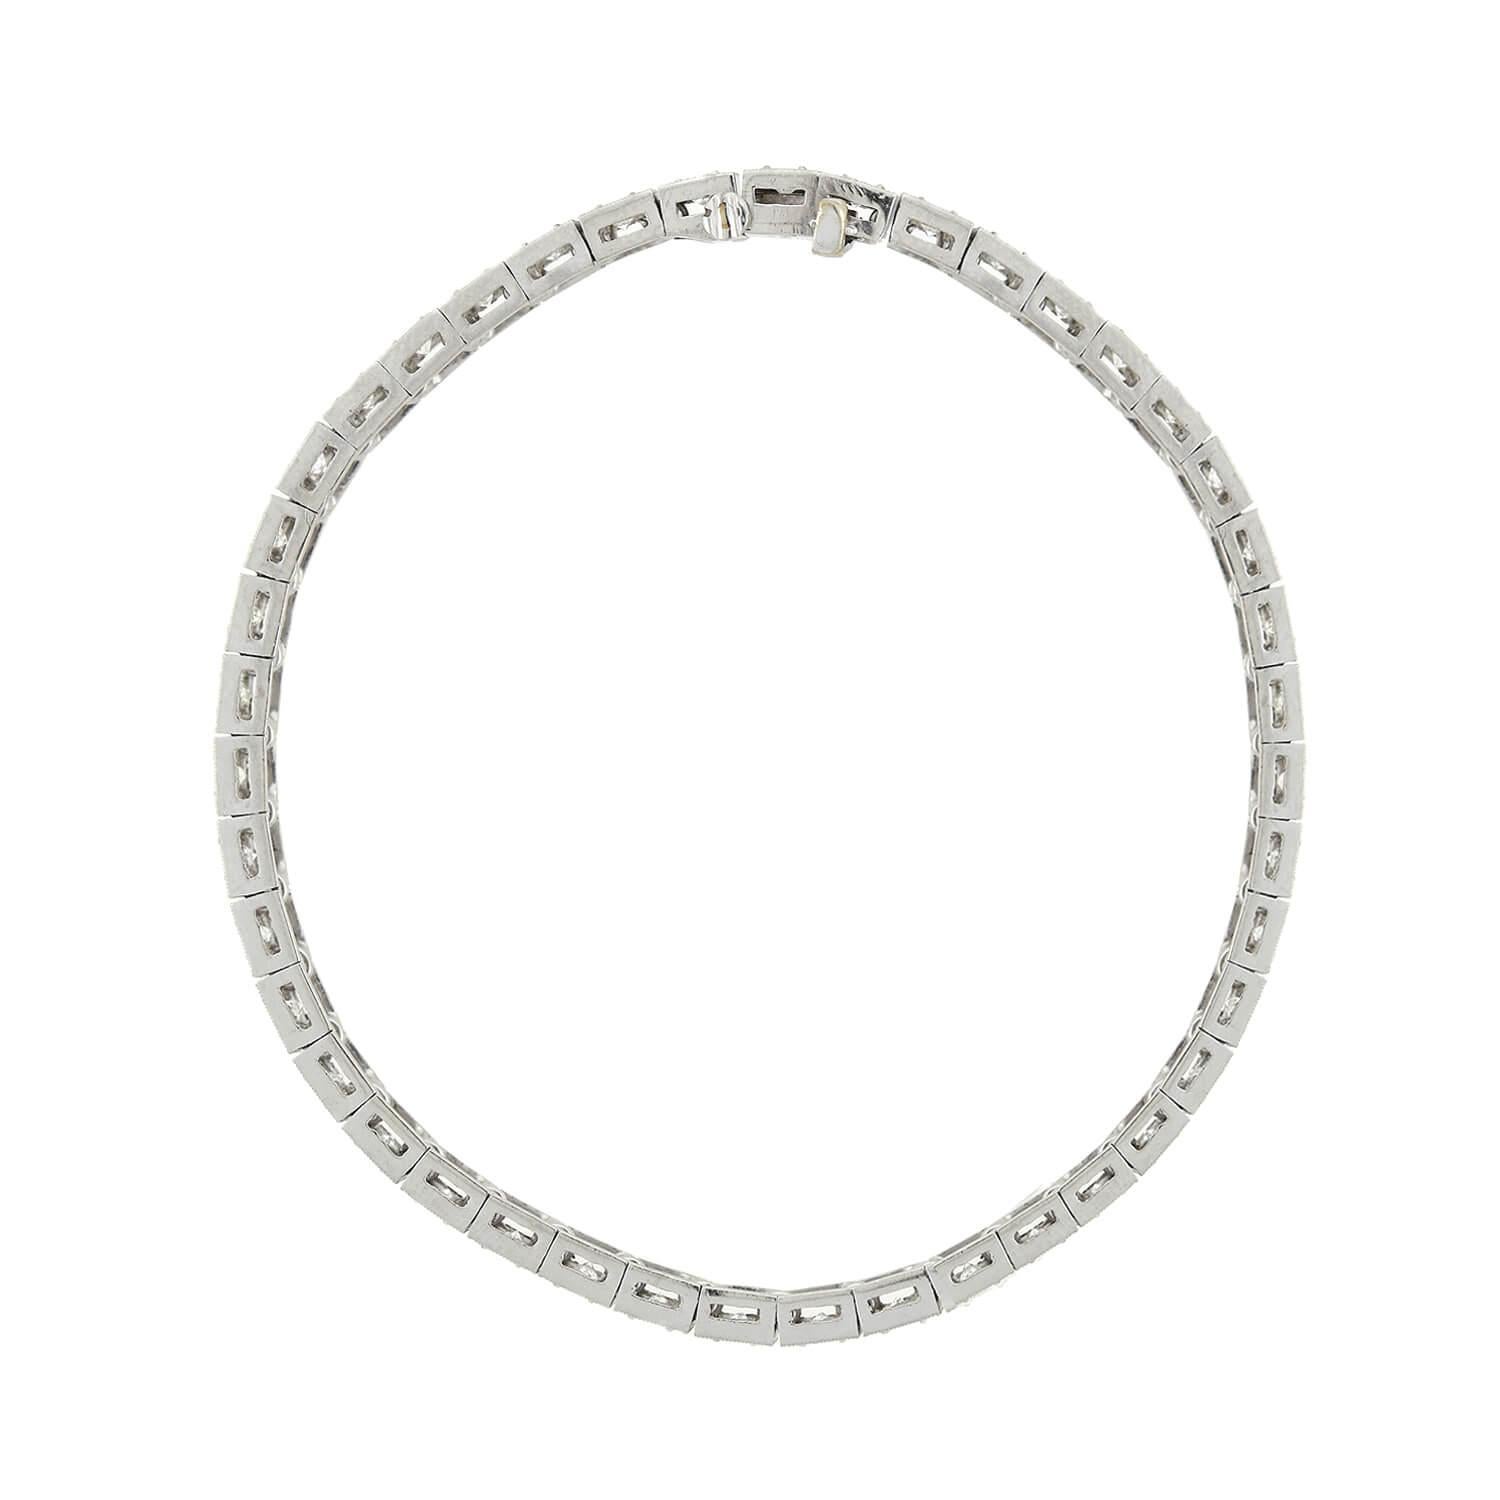 Ein unglaubliches Diamantarmband aus der Zeit des Art déco (ca. 1920)! Das aus Platin gefertigte Schmuckstück besteht aus insgesamt 42 Gliedern, die jeweils mit einem Diamanten im Old European Cut verziert sind. Die funkelnden Diamanten sind in